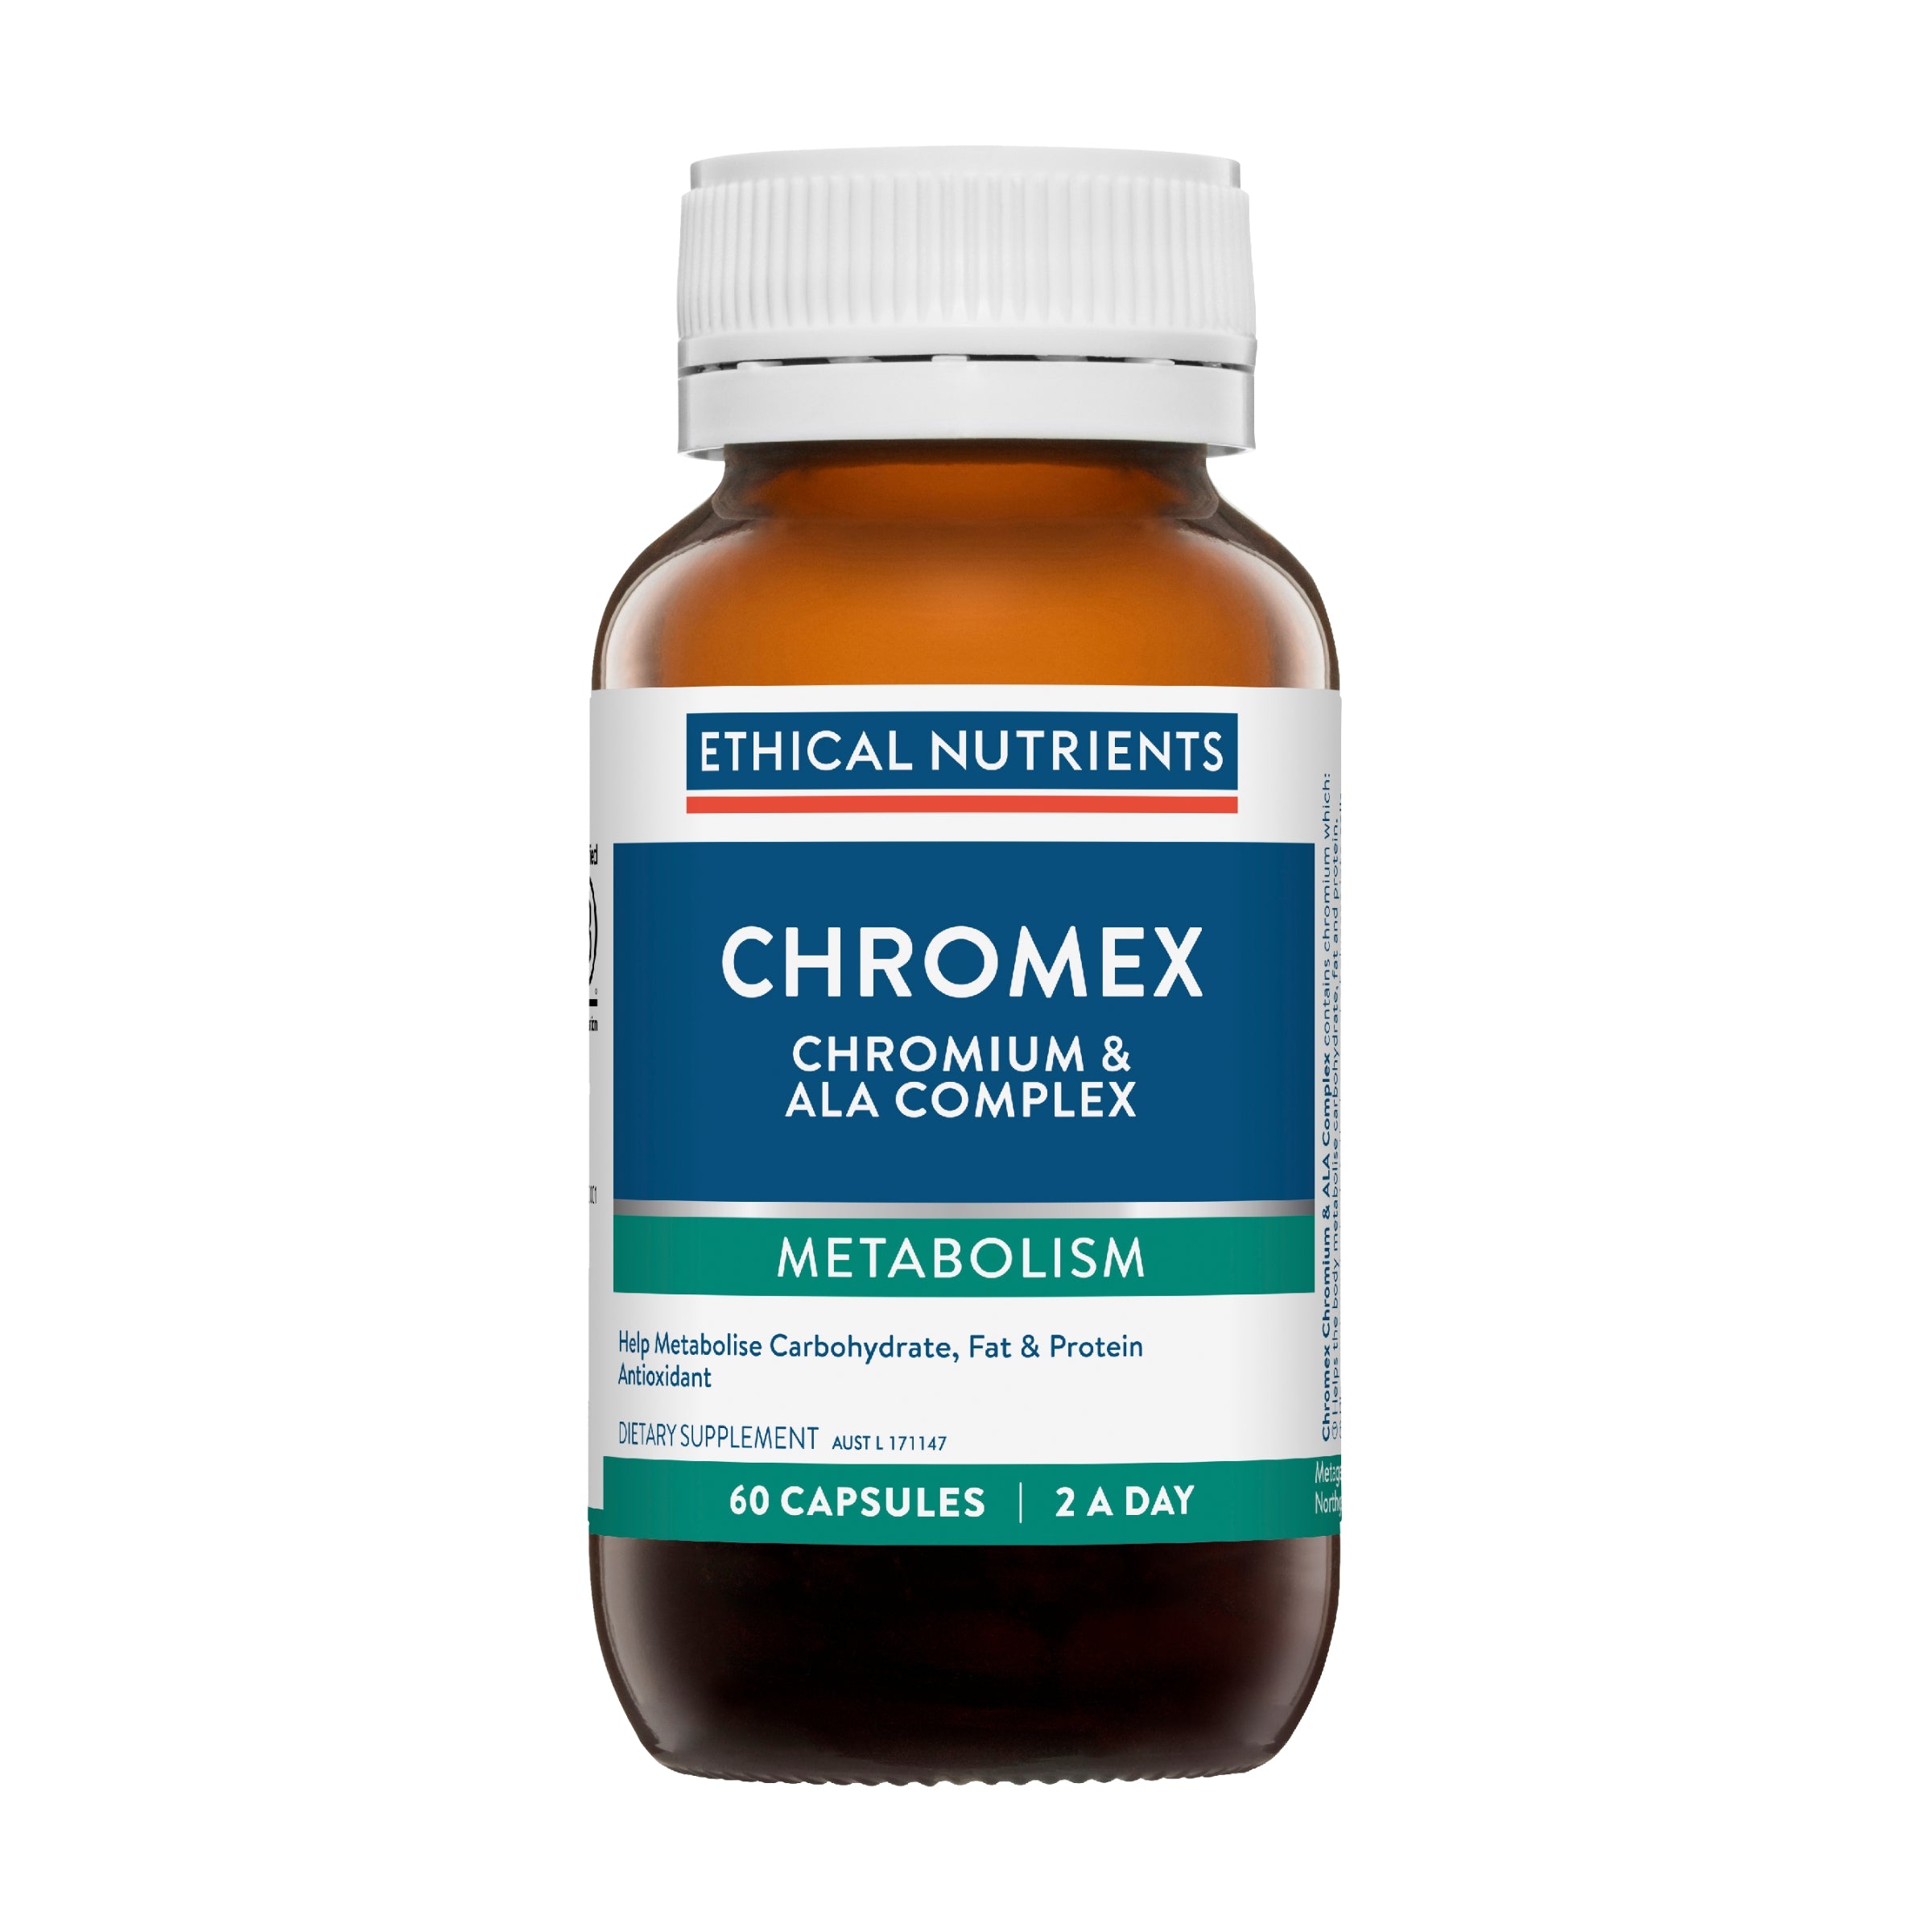 Ethical Nutrients Chromex Chromium & ALA Complex 60 Capsules #size_60 capsules